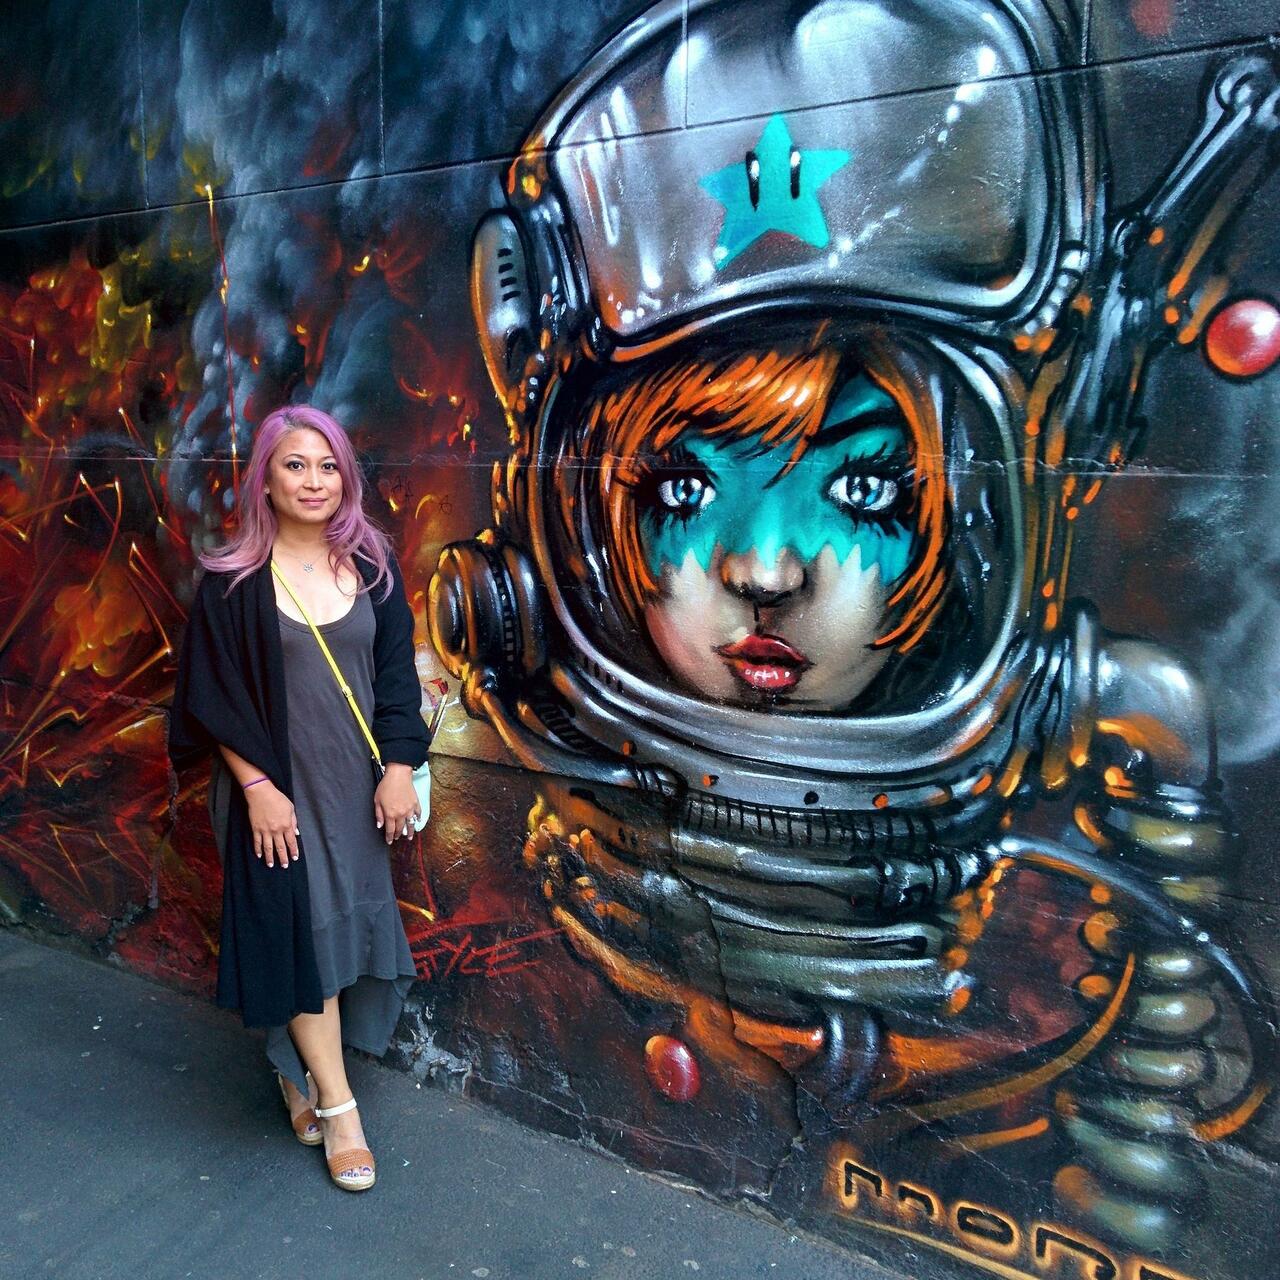 #melbourne #streetart #mural #graffiti #spacegirl #WIW #OOTD #travelstyle #fblogger https://instagram.com/p/8HKERPLt8V/ http://t.co/a3OvxAQaMc